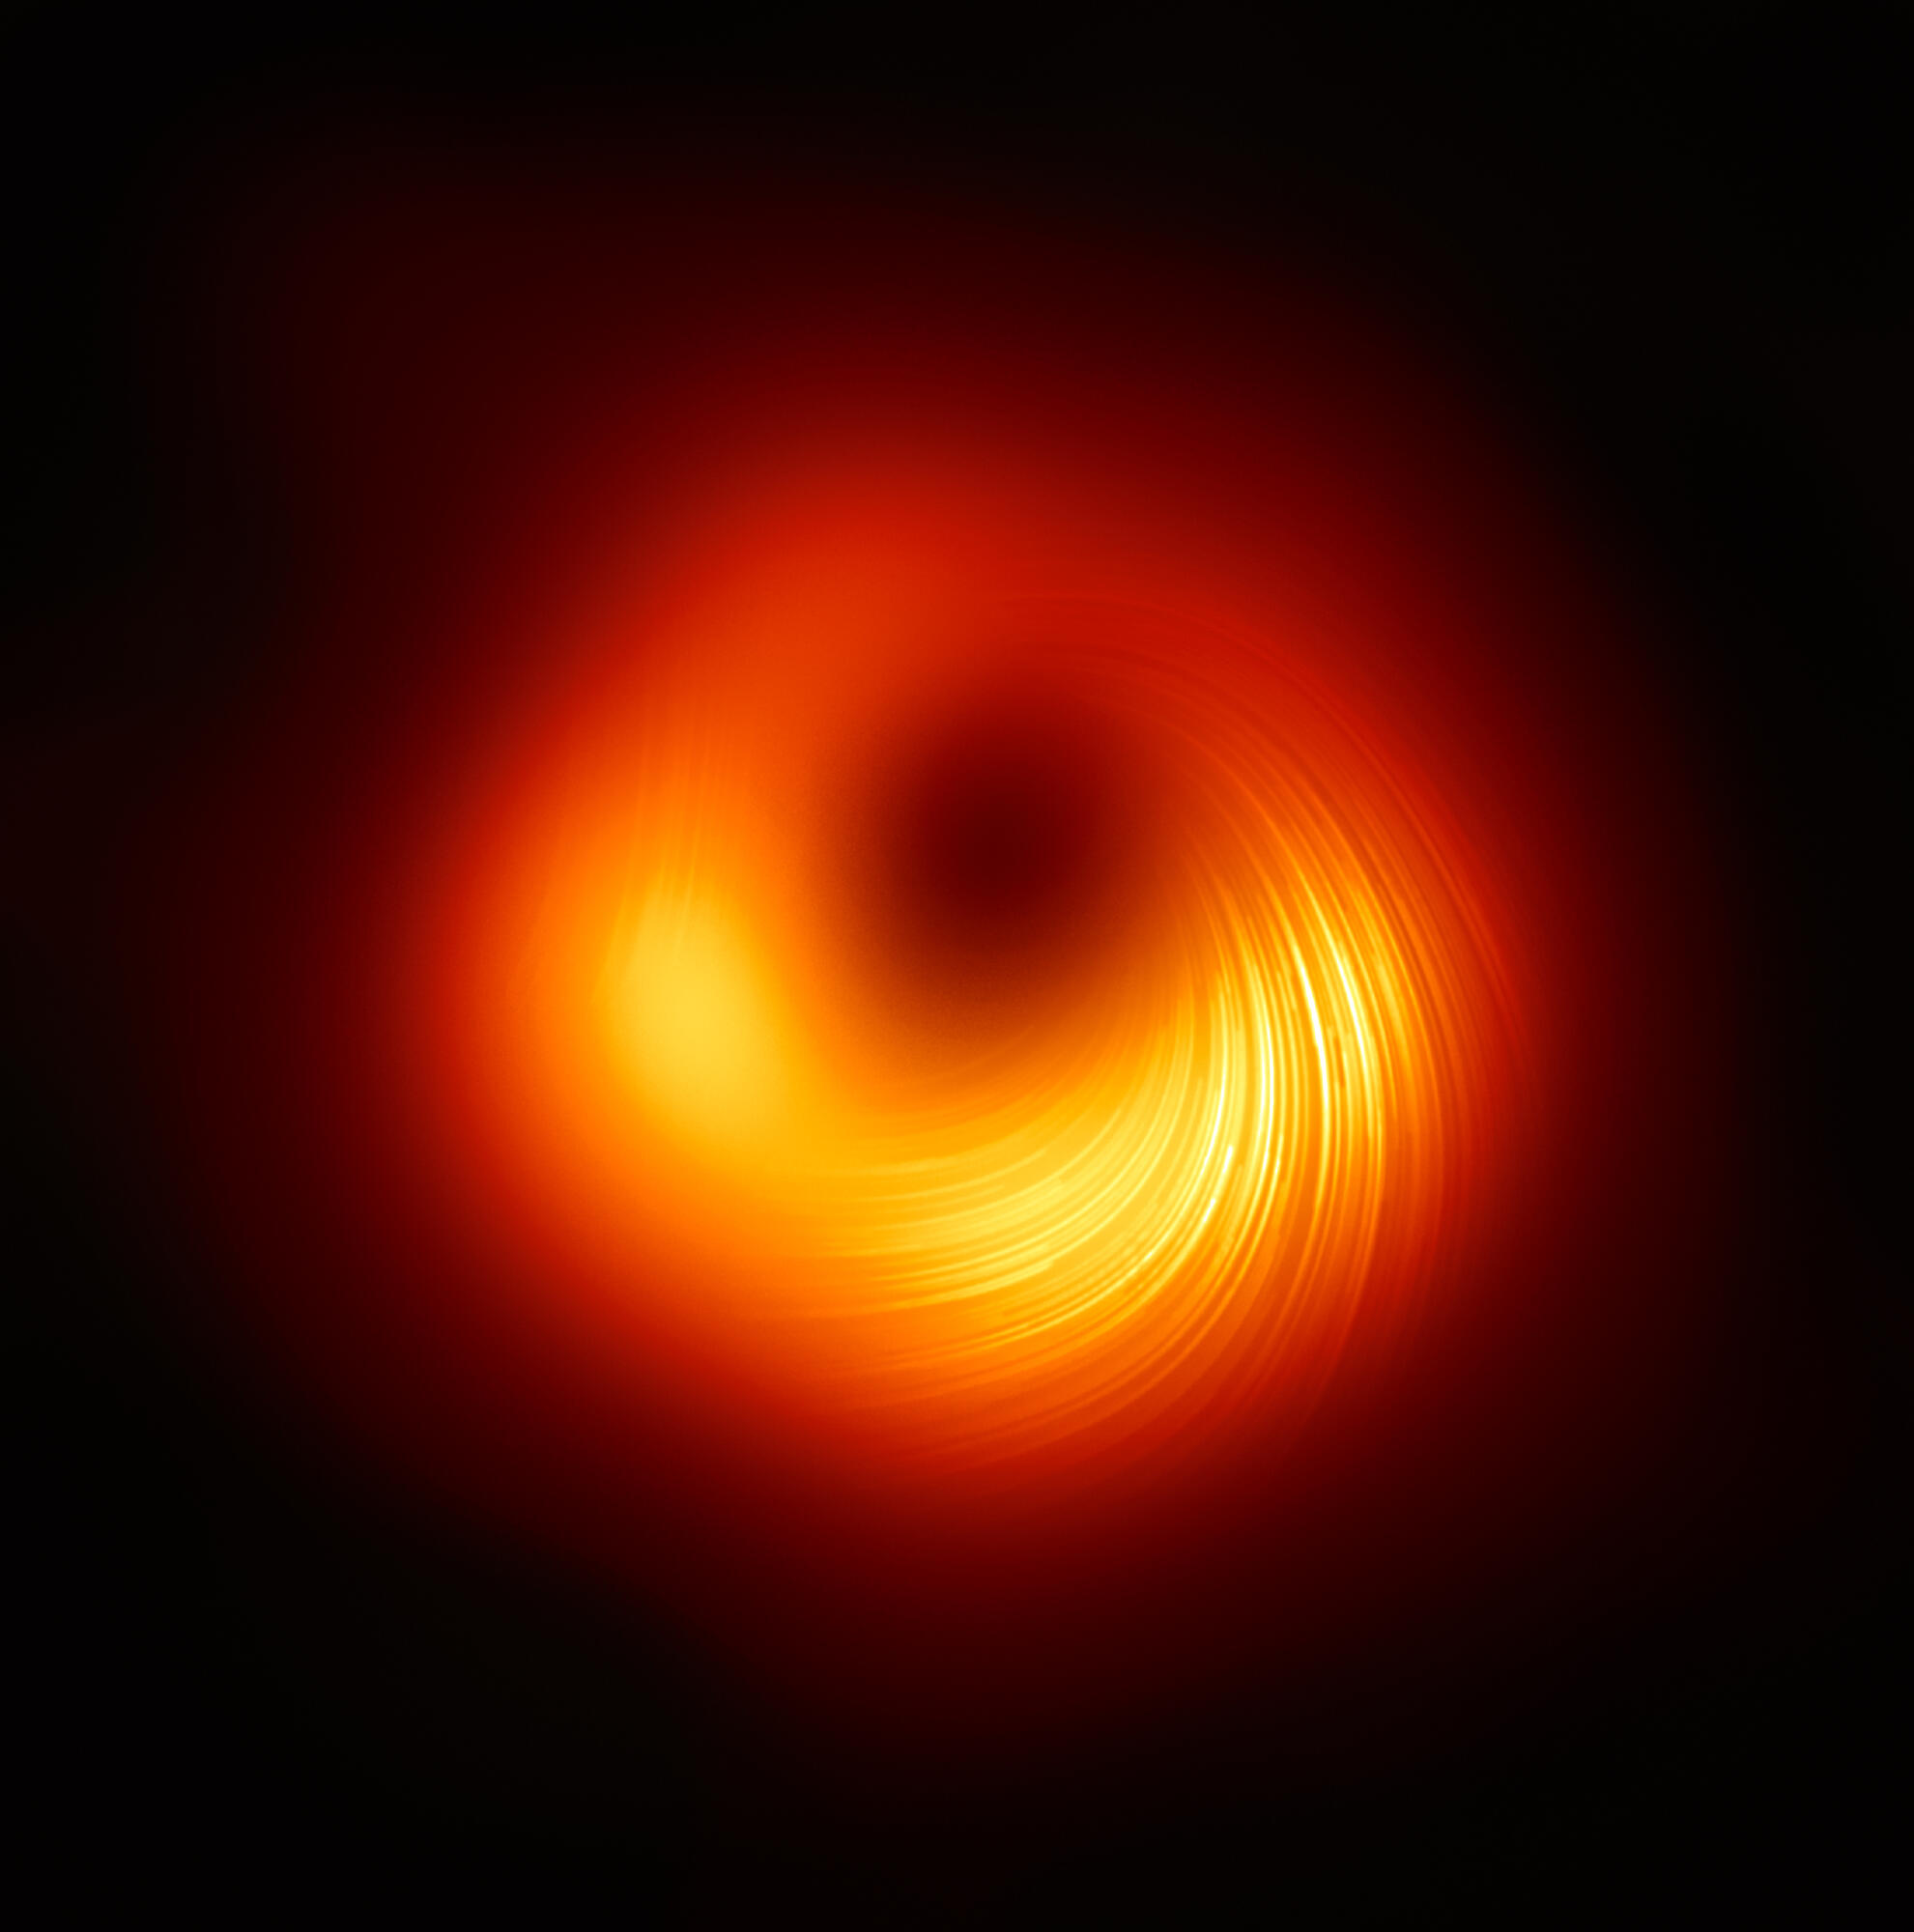 Messier 87 -galaksin keskellä oleva supermassiivinen musta aukko polarisoidussa valossa. Viivat osoittavat polarisaation suunnan, joka määräytyy mustan aukon magneettikentän suunnasta. Kuva: EHT Collaboration